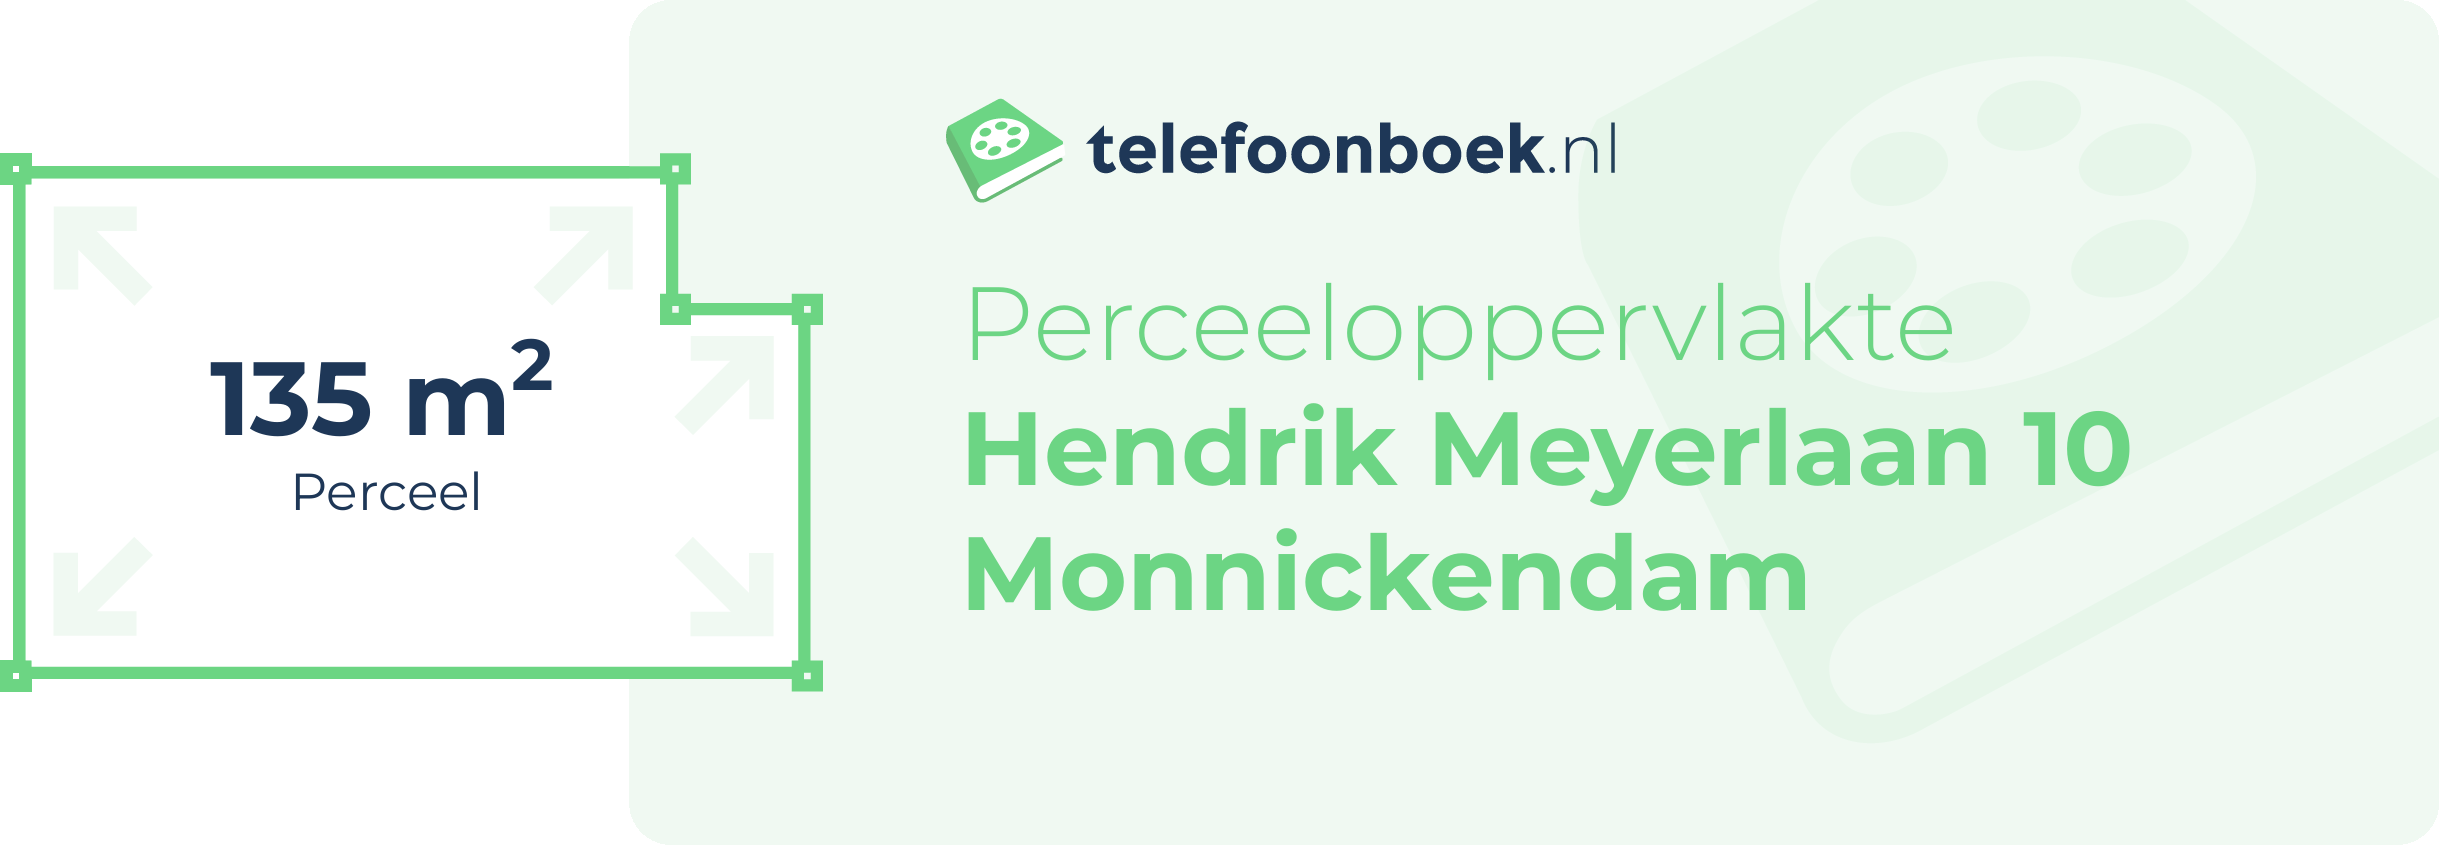 Perceeloppervlakte Hendrik Meyerlaan 10 Monnickendam